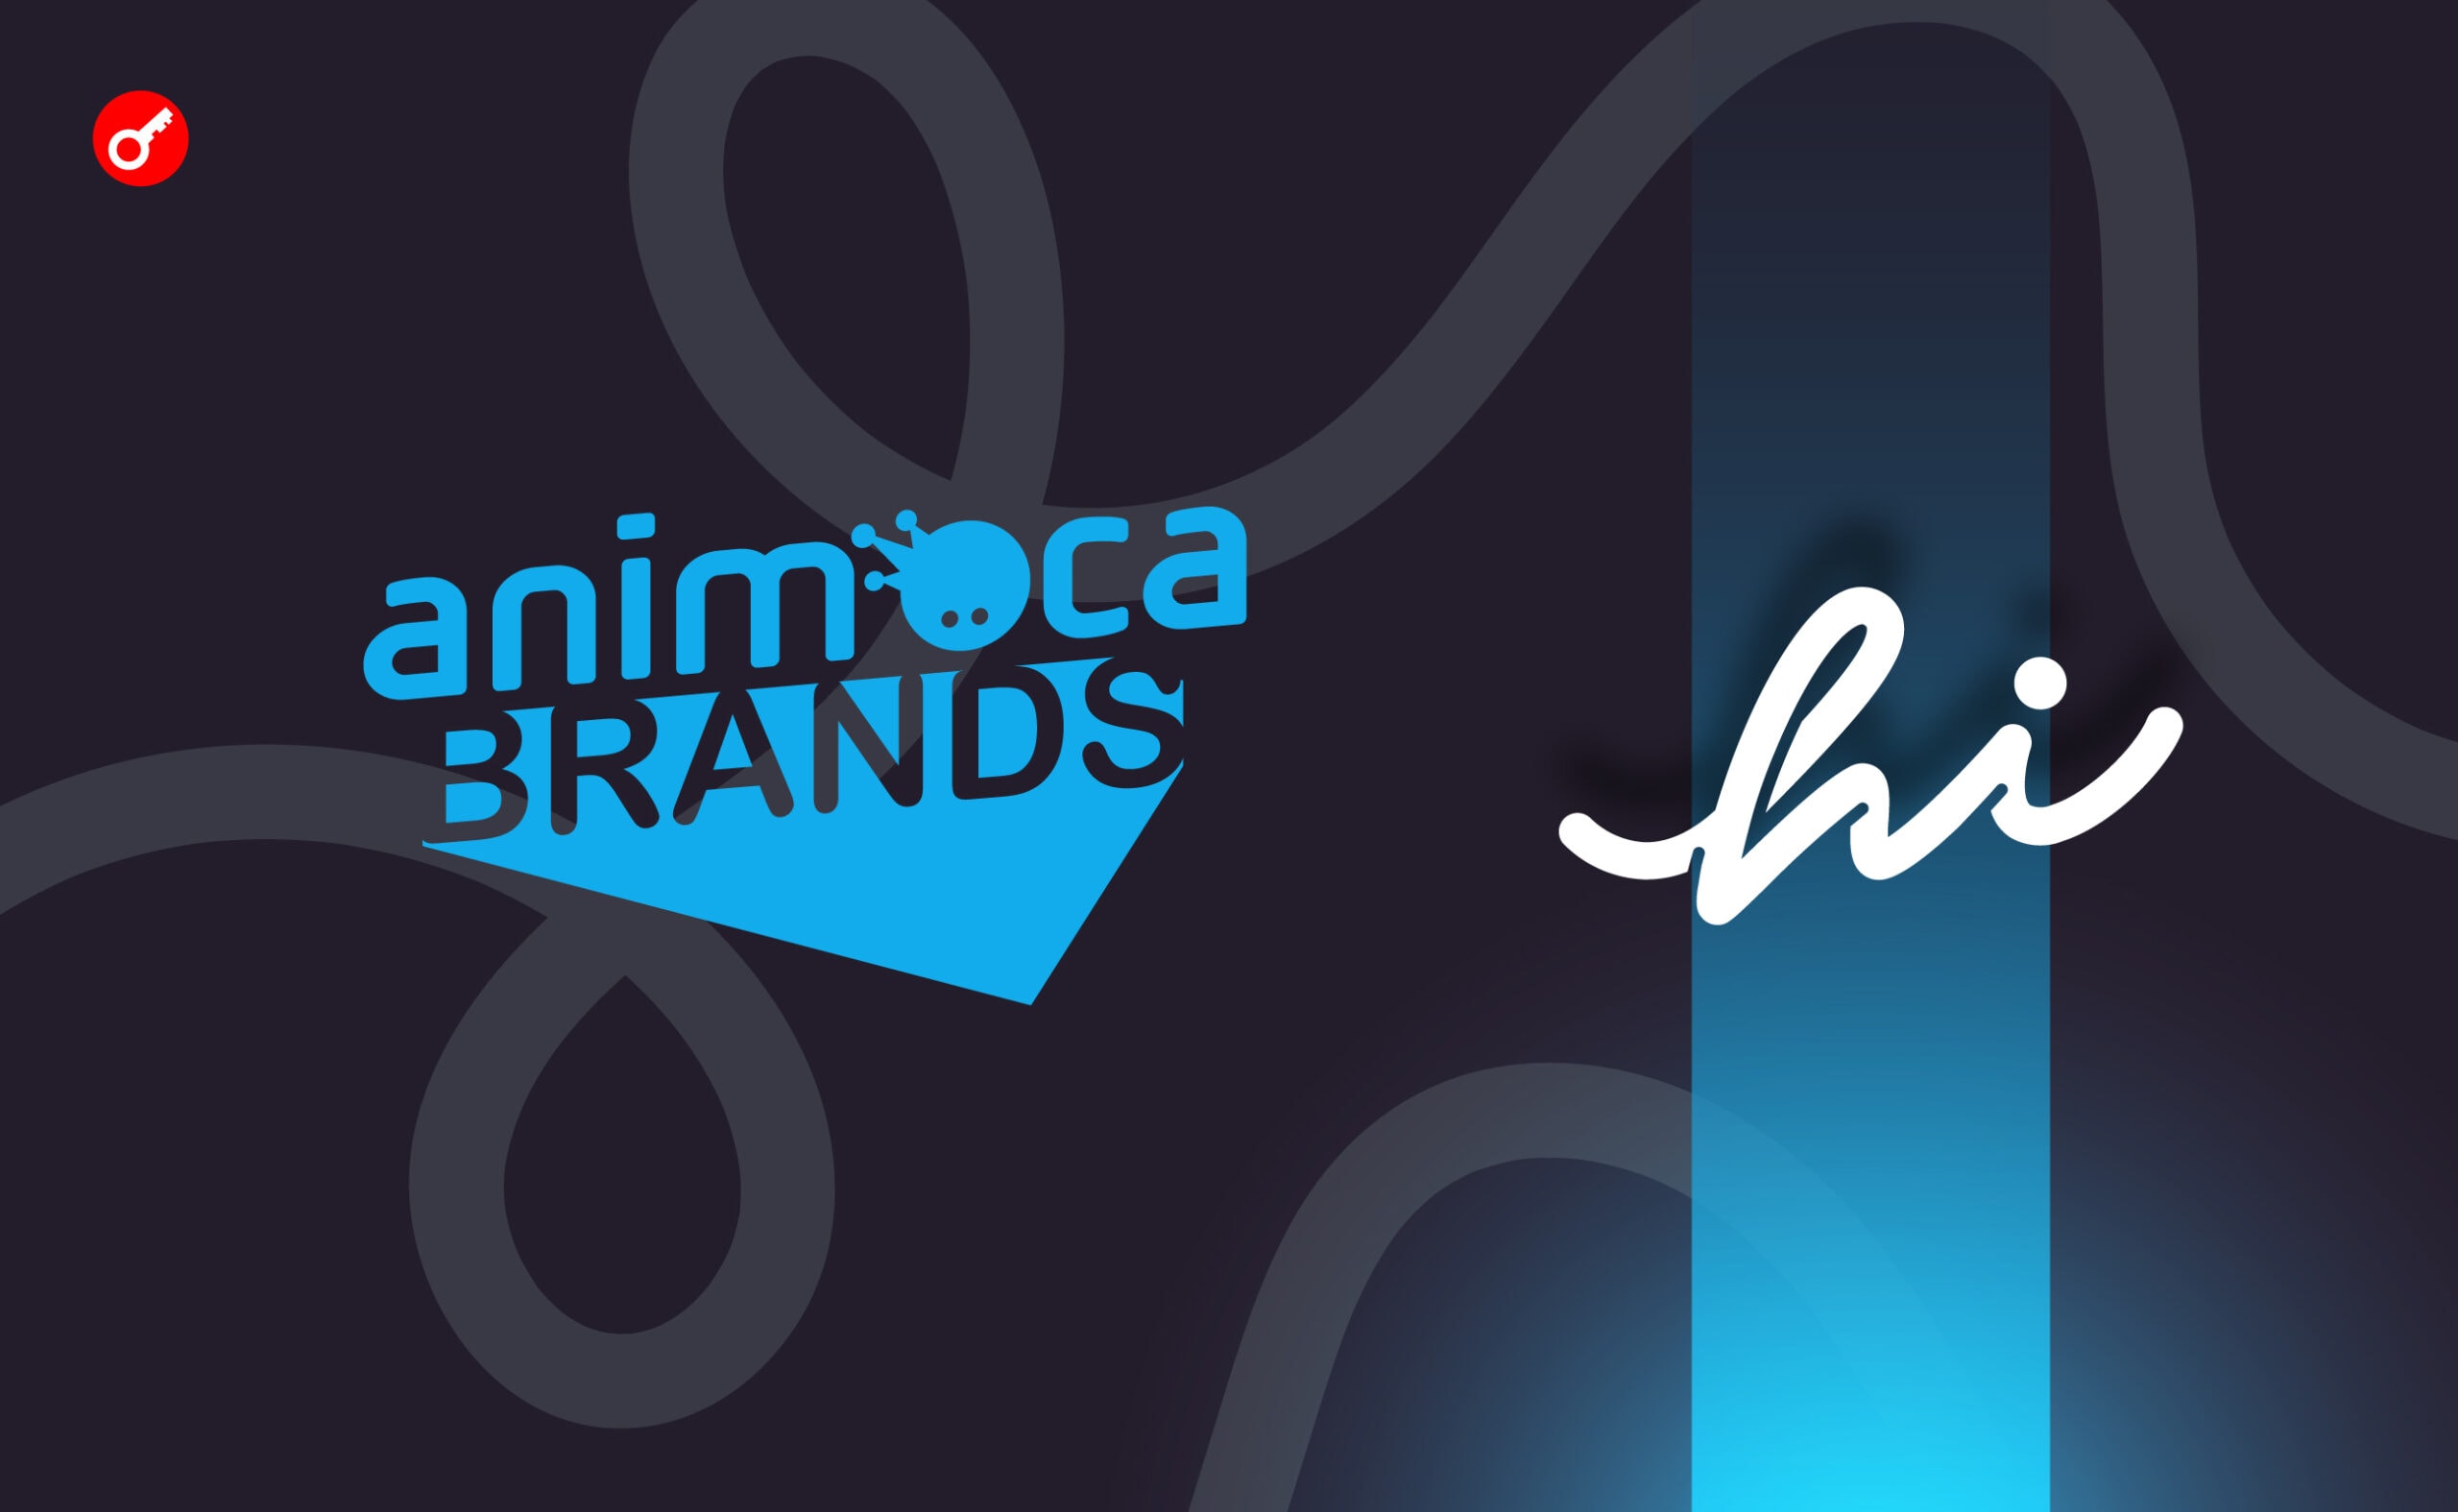 Animoca Brand инвестировала $30 млн в необанк hi. Заглавный коллаж новости.